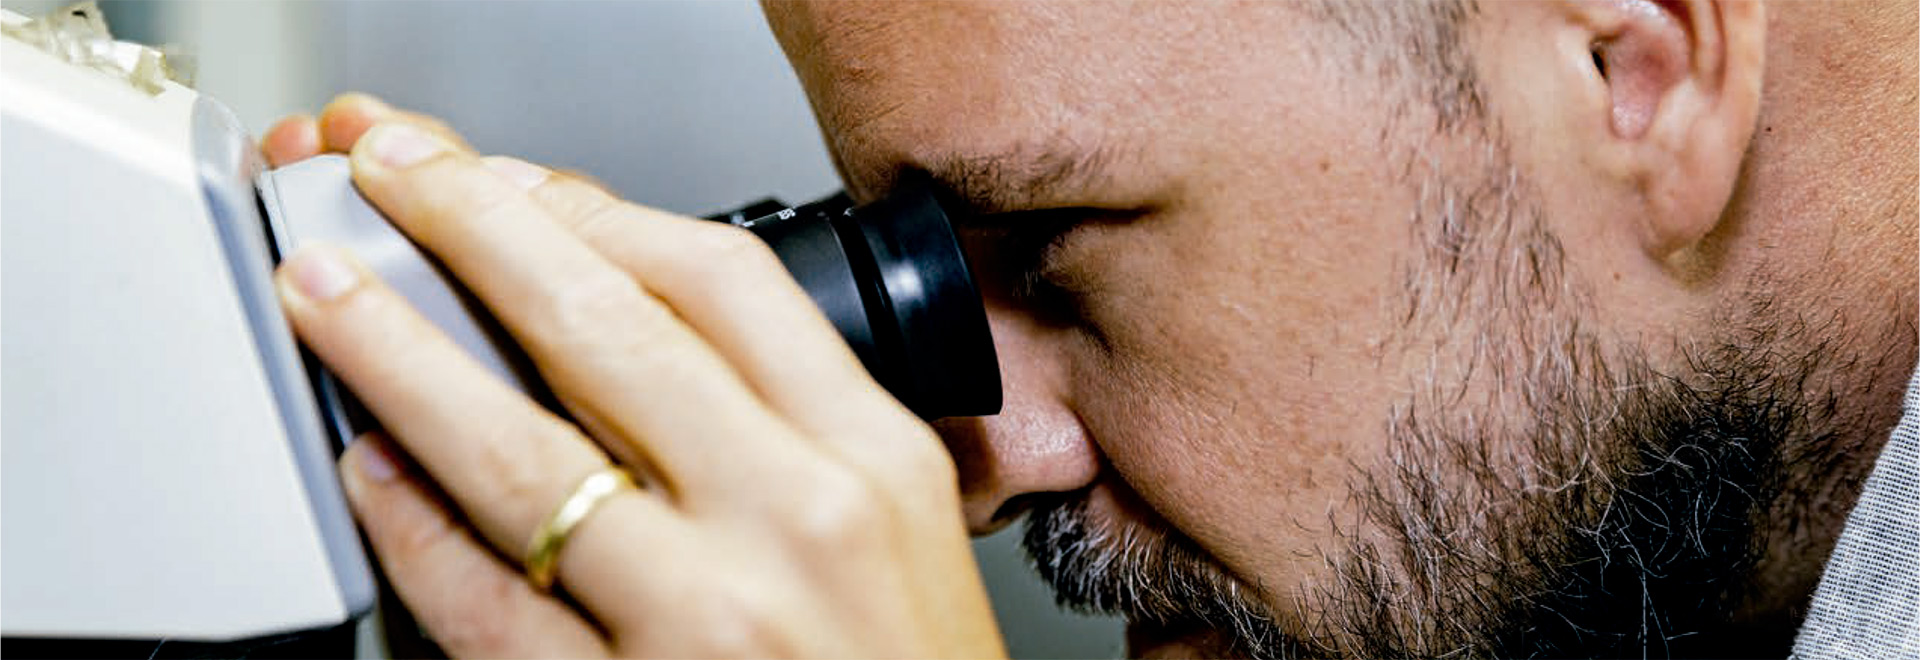 Audiodescrição (AD): Foto mostra um homem olhando em um microscópio. Imagem 1 de 1